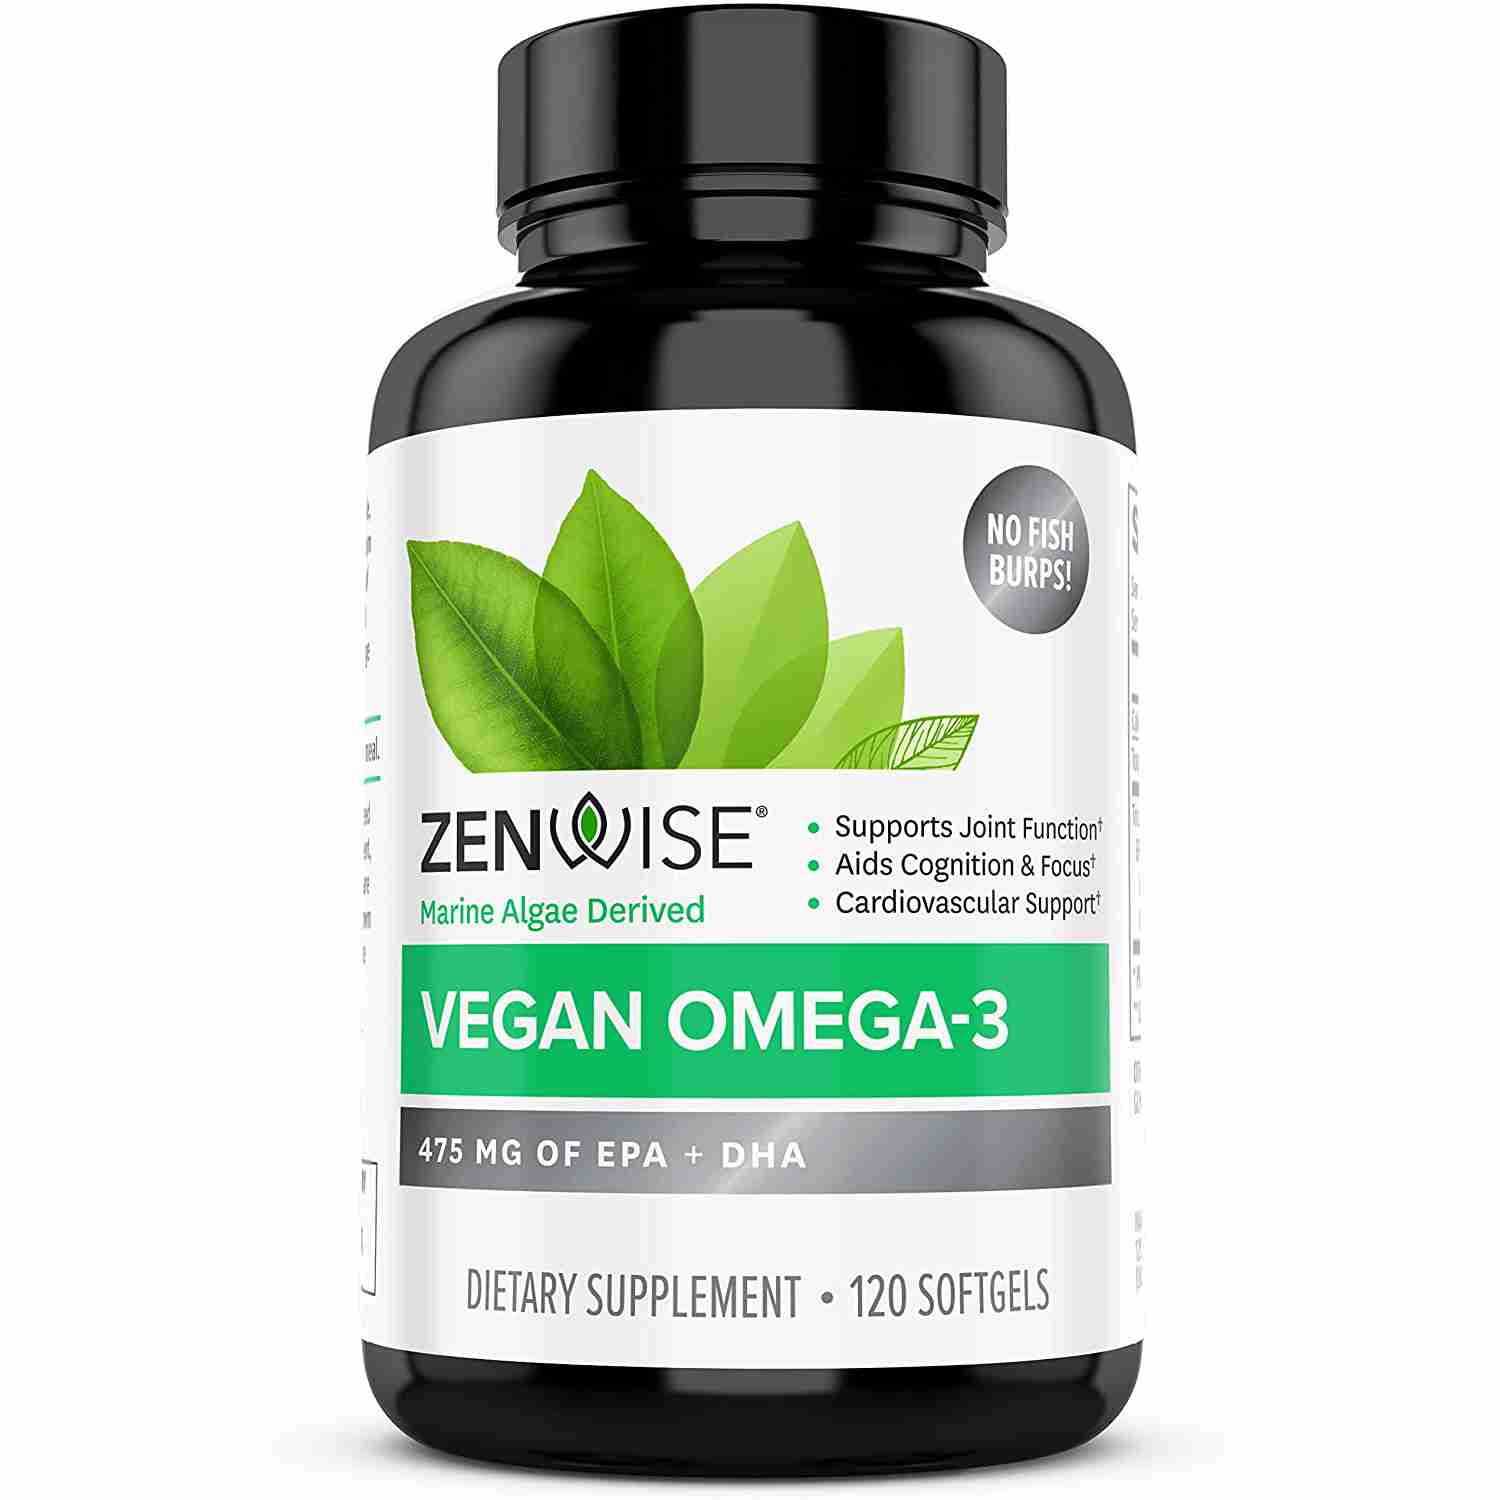 omega-3 with cash back rebate